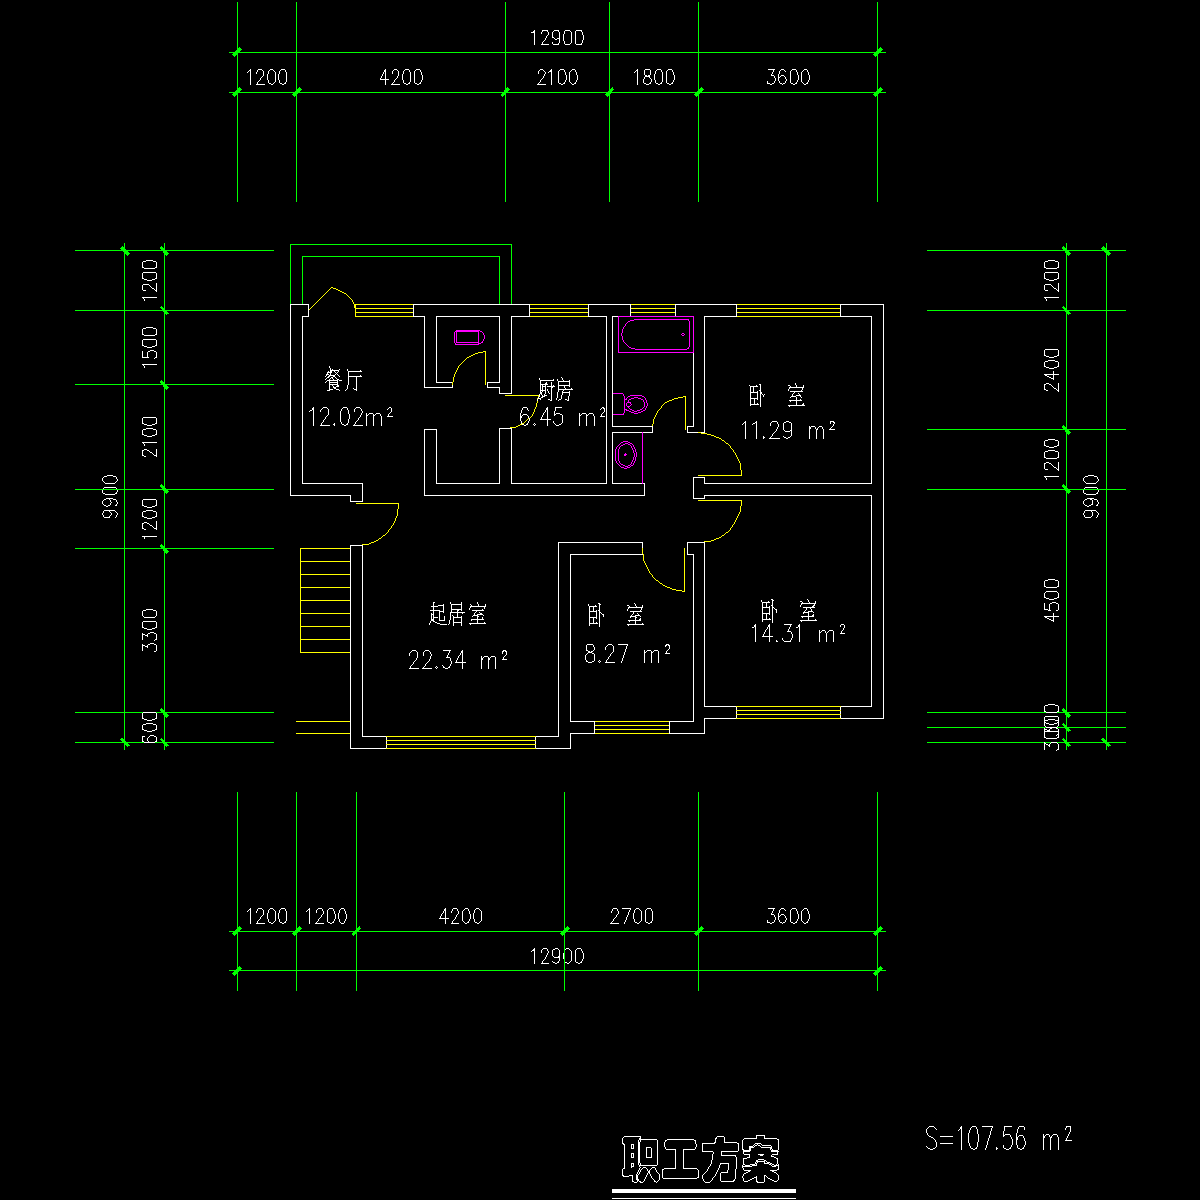 板式多层单户三室户型CAD图纸(108/108)